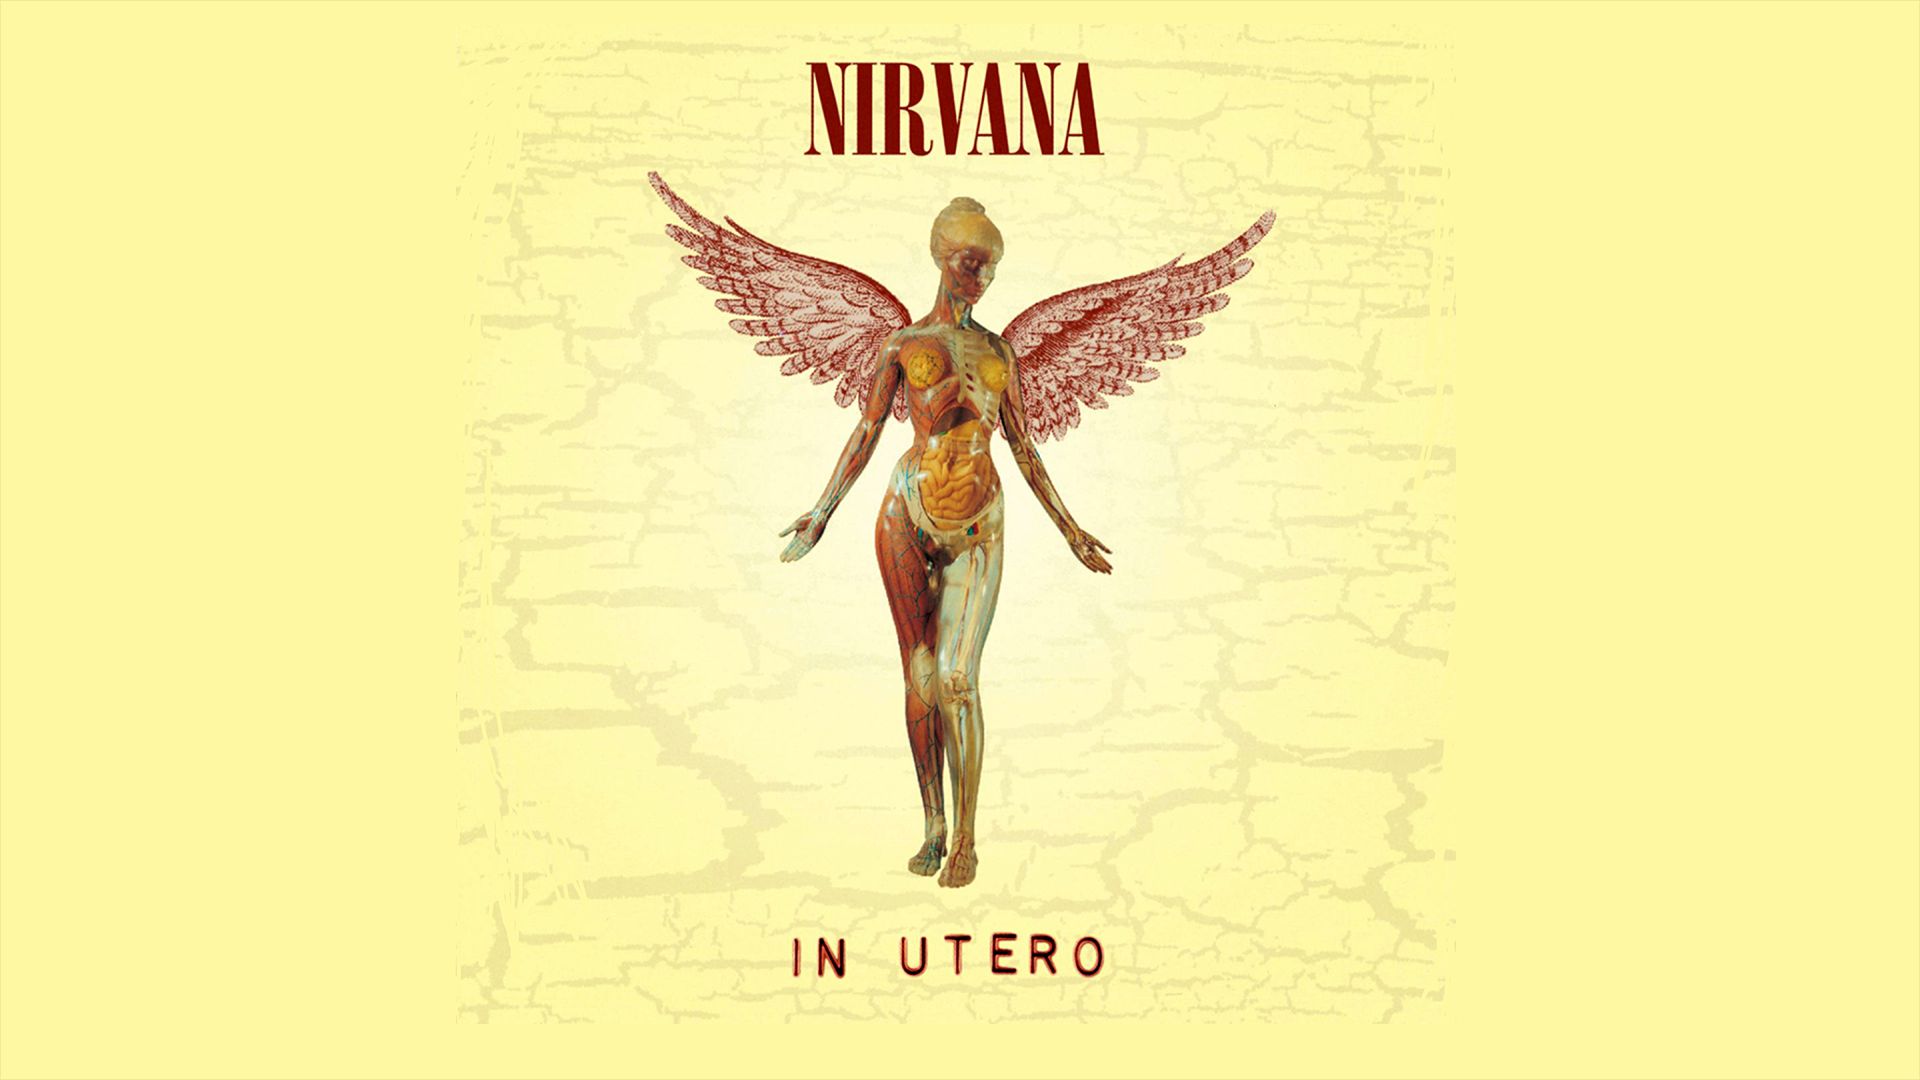 album cover, nirvana, music, anatomy, angel